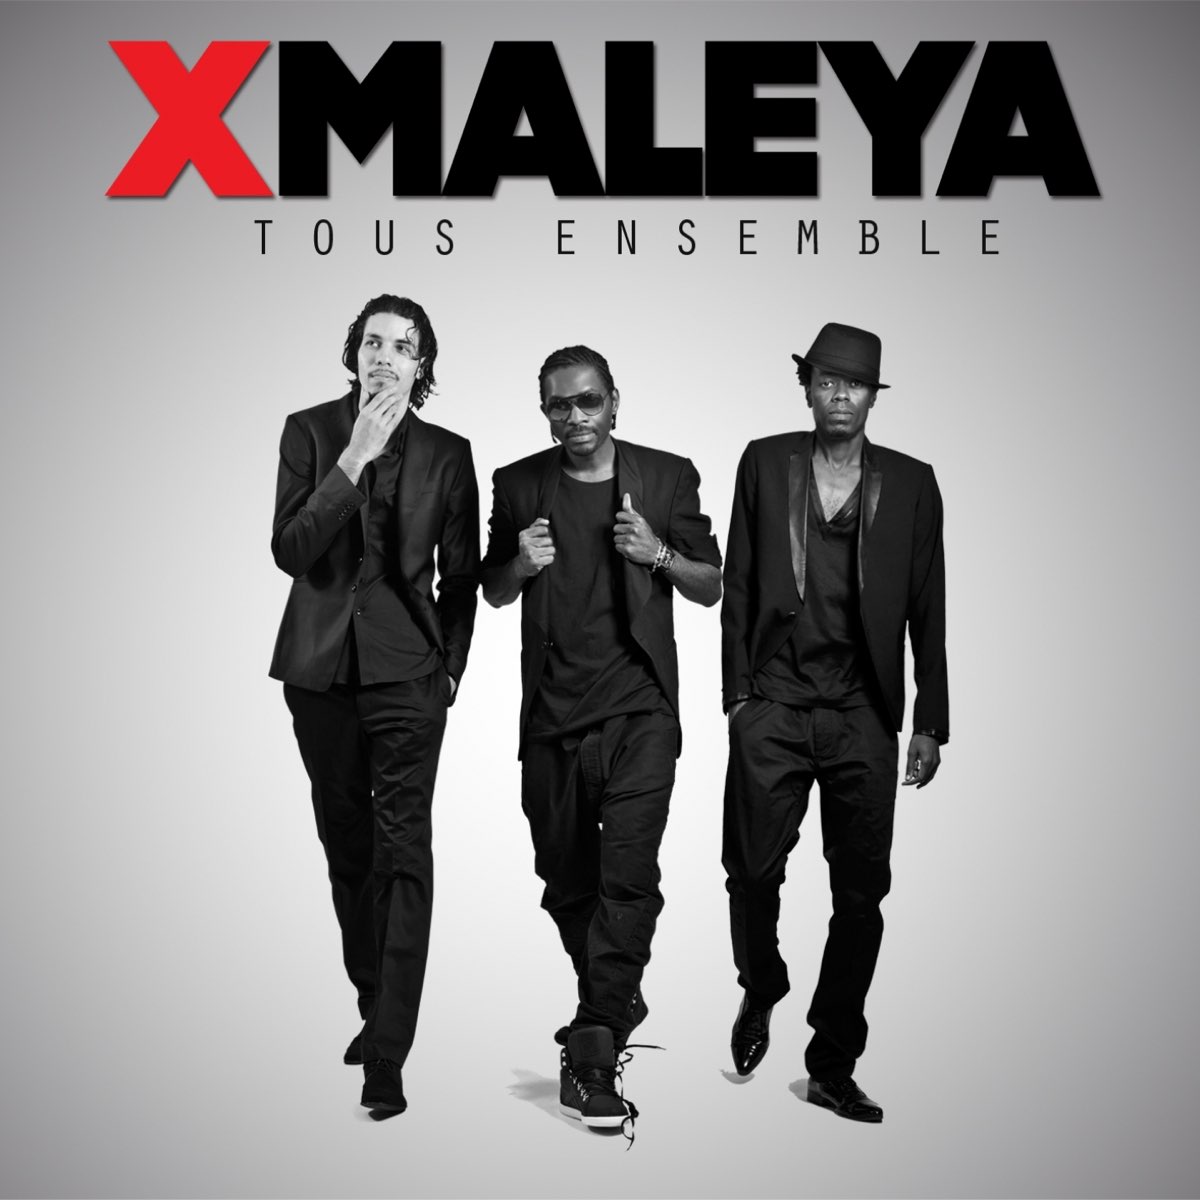 Tous Ensemble by Xmaleya | Album